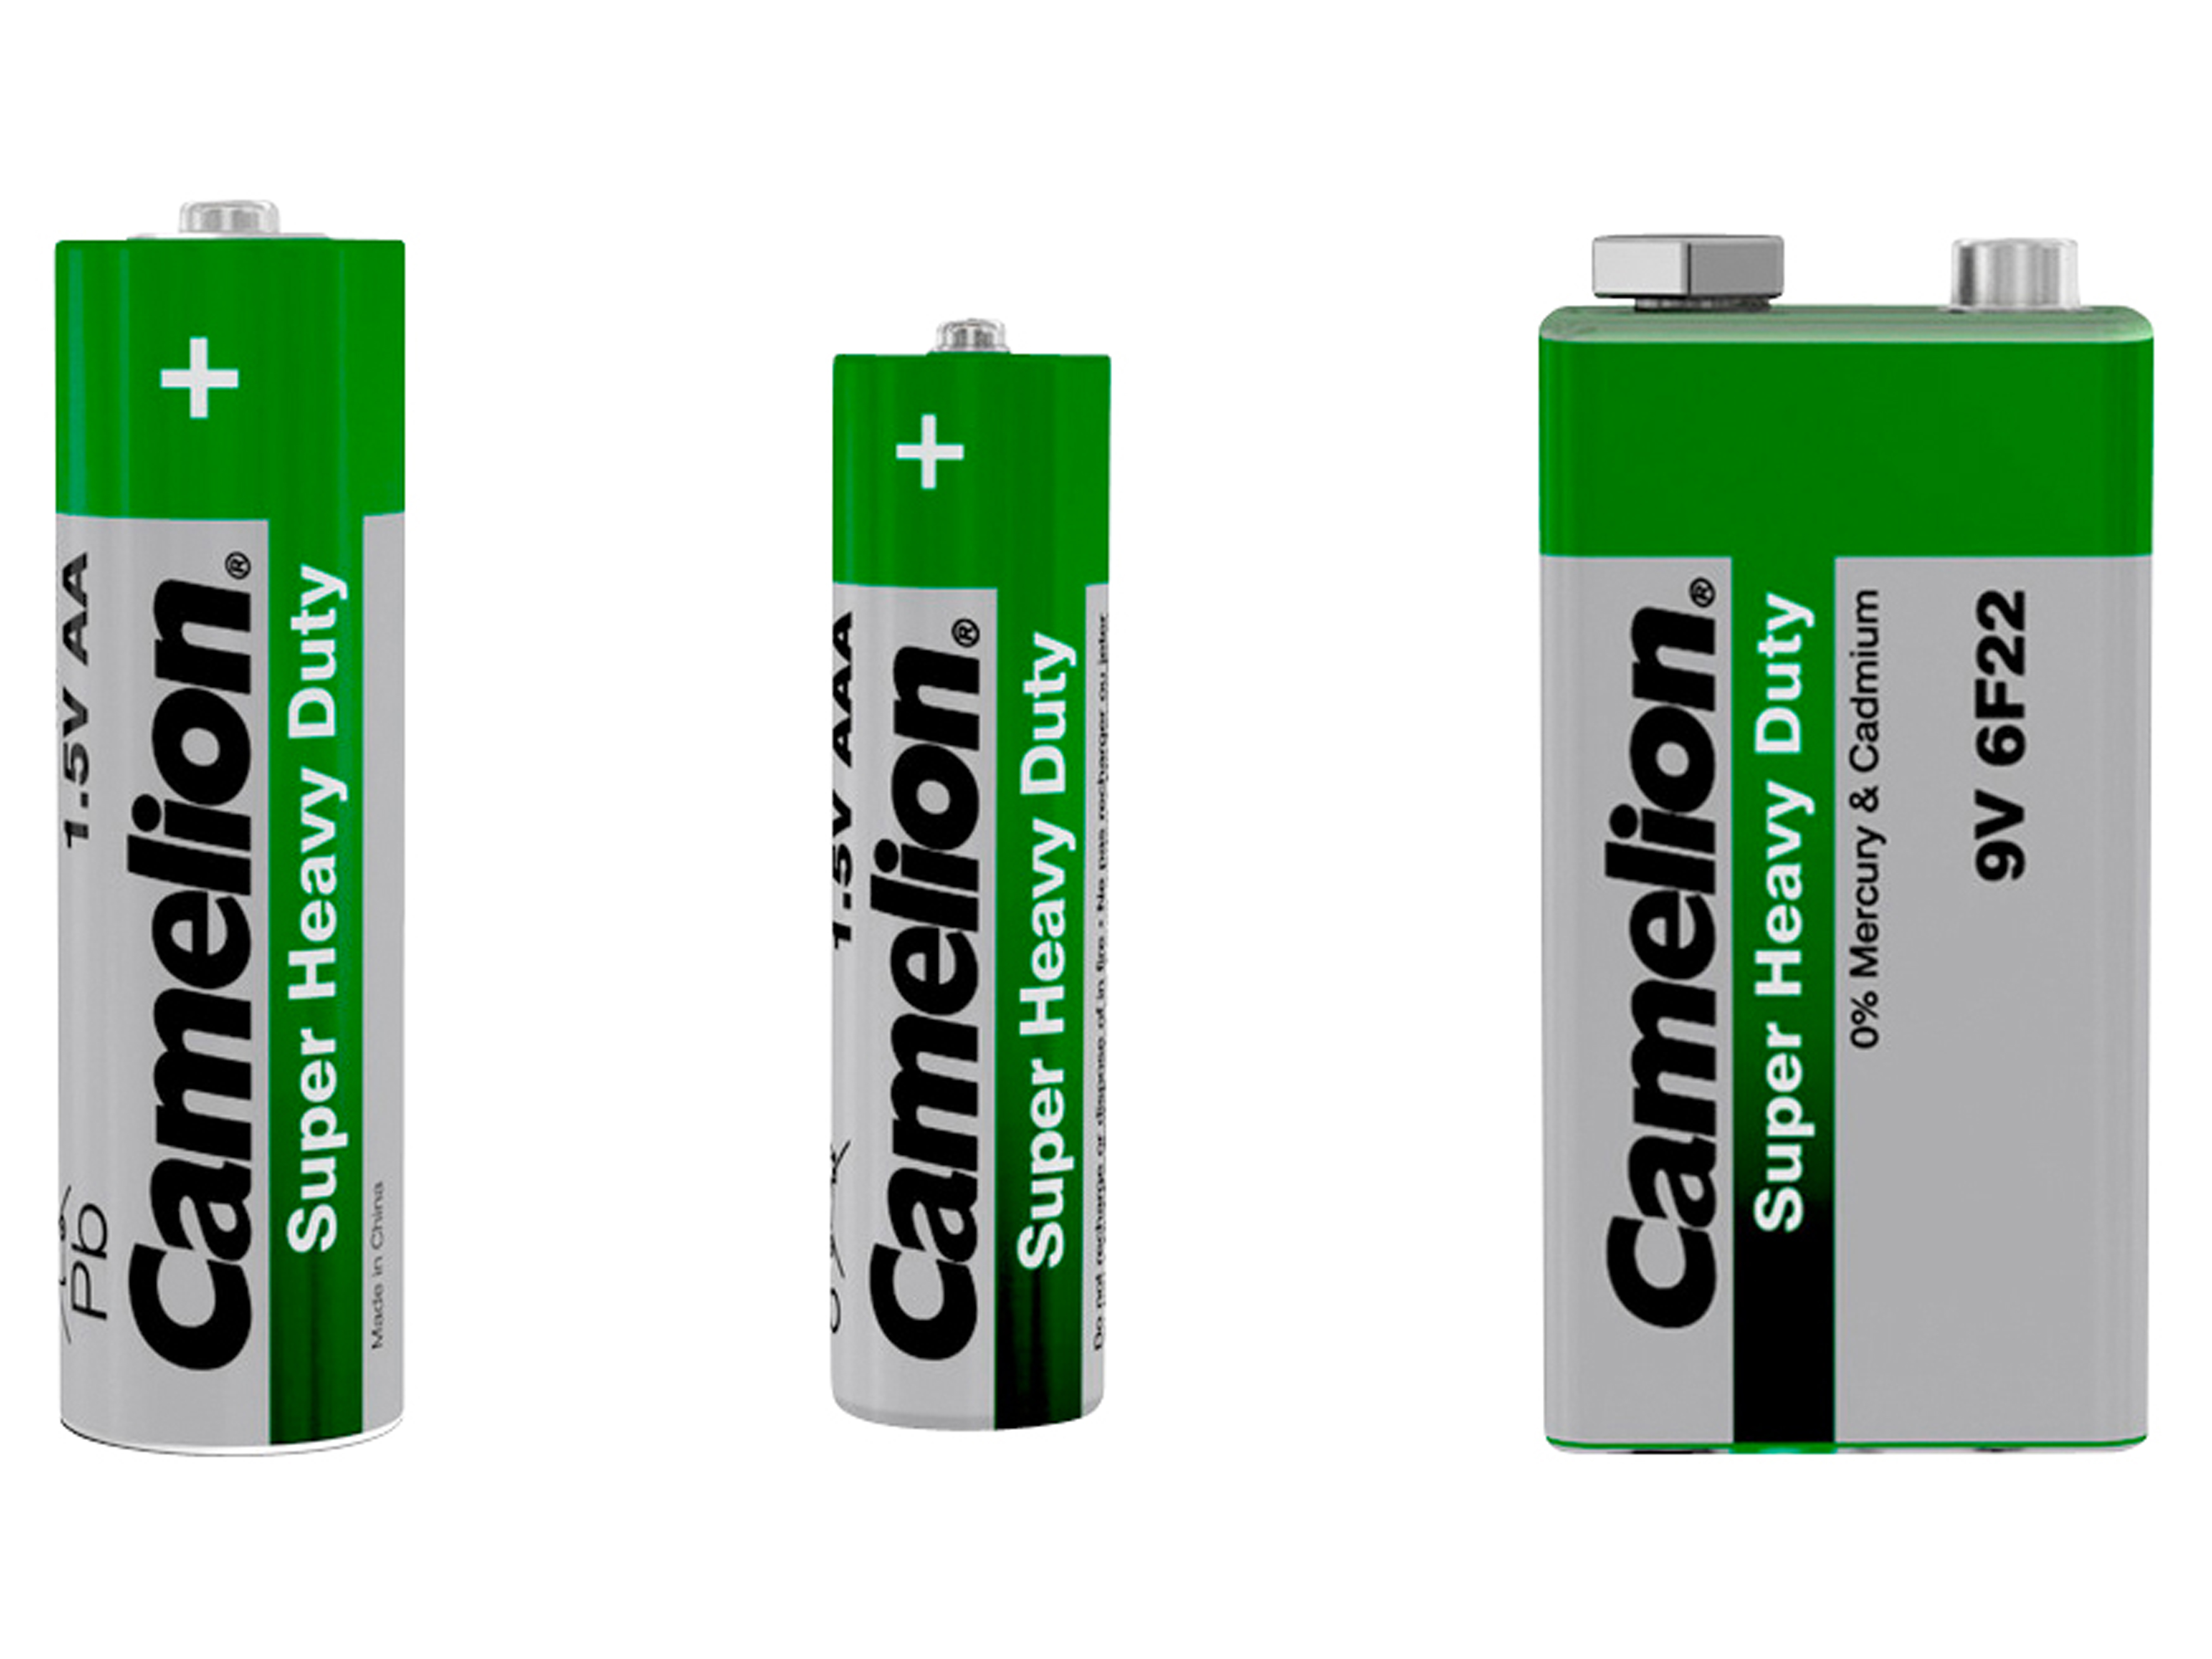 CAMELION Batterie-Set, 25 Stück, Zink-Kohle, 12x Mignon, 12x Micro, 1x 9V-Block